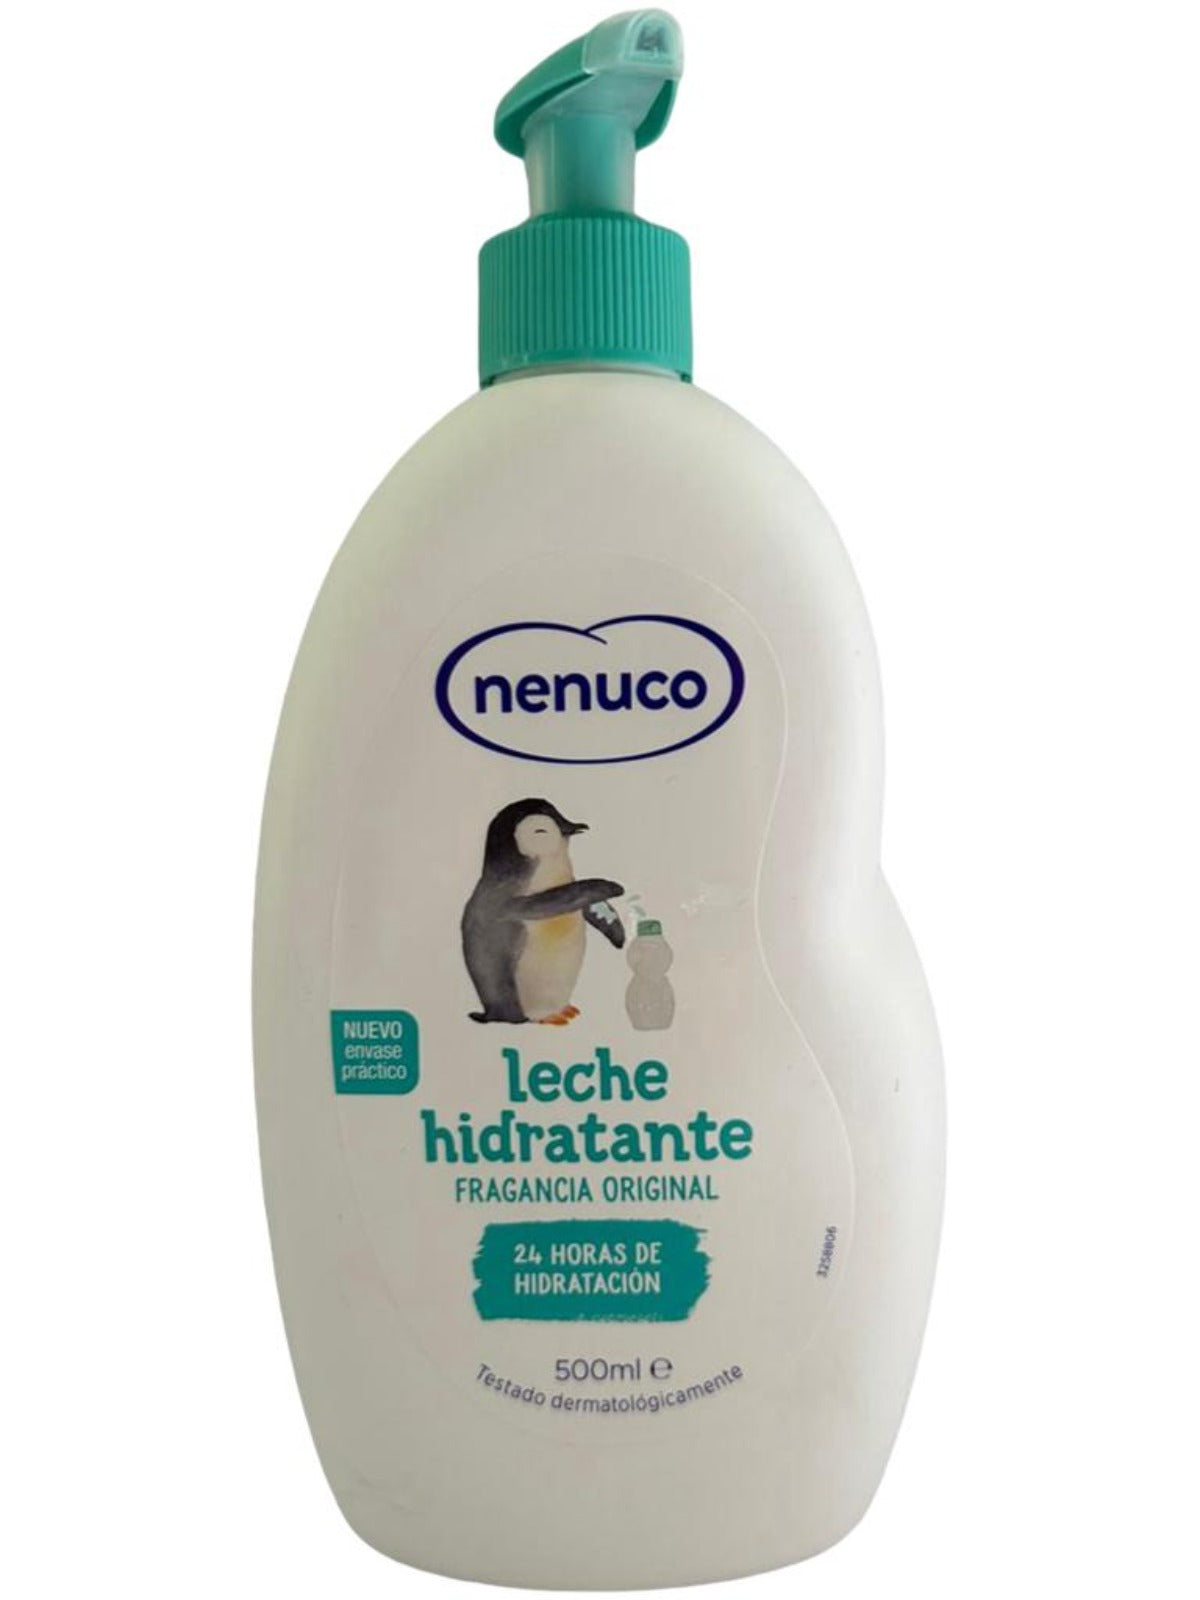 Nenuco Spanish Hydrating Body Cream 500ml